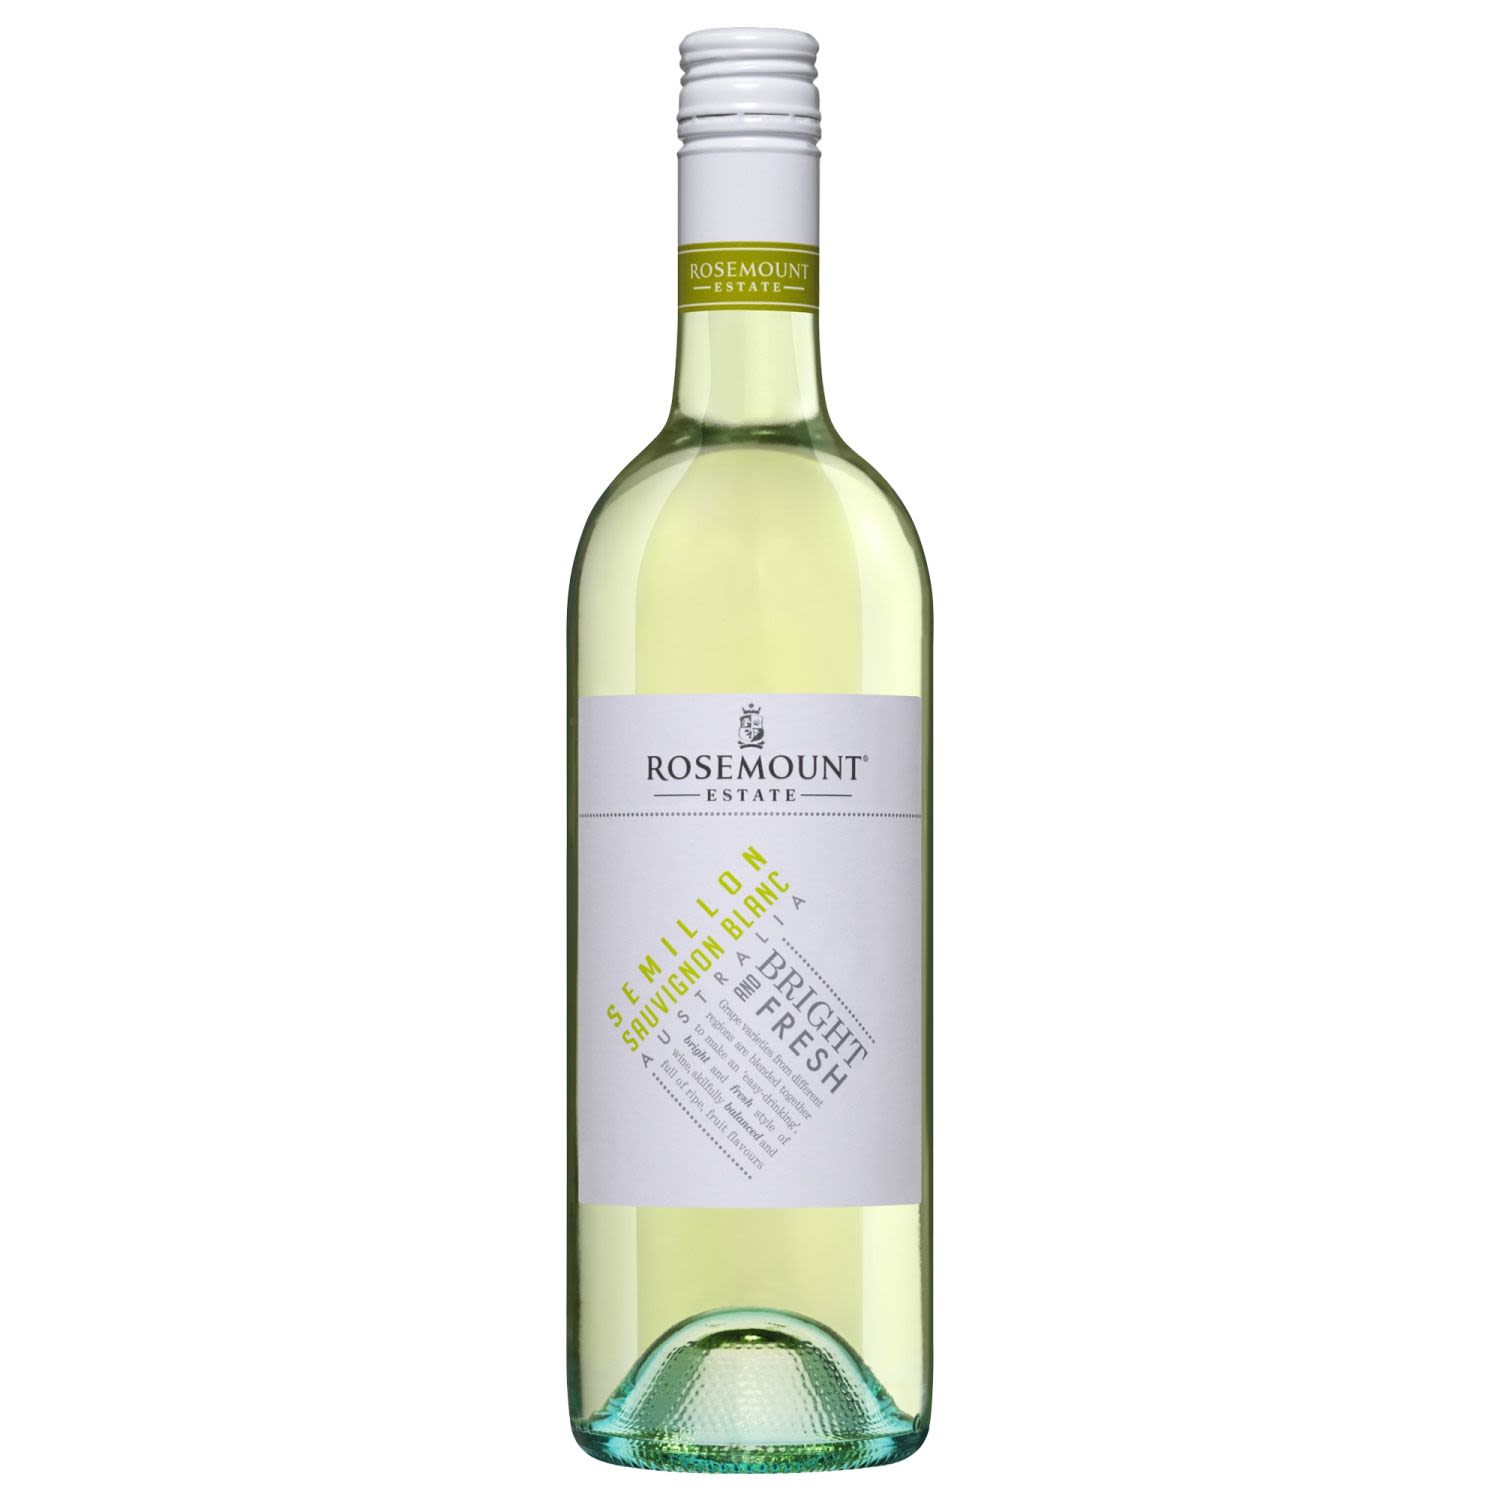 Rosemount Semillon Sauvignon Blanc 750mL Bottle